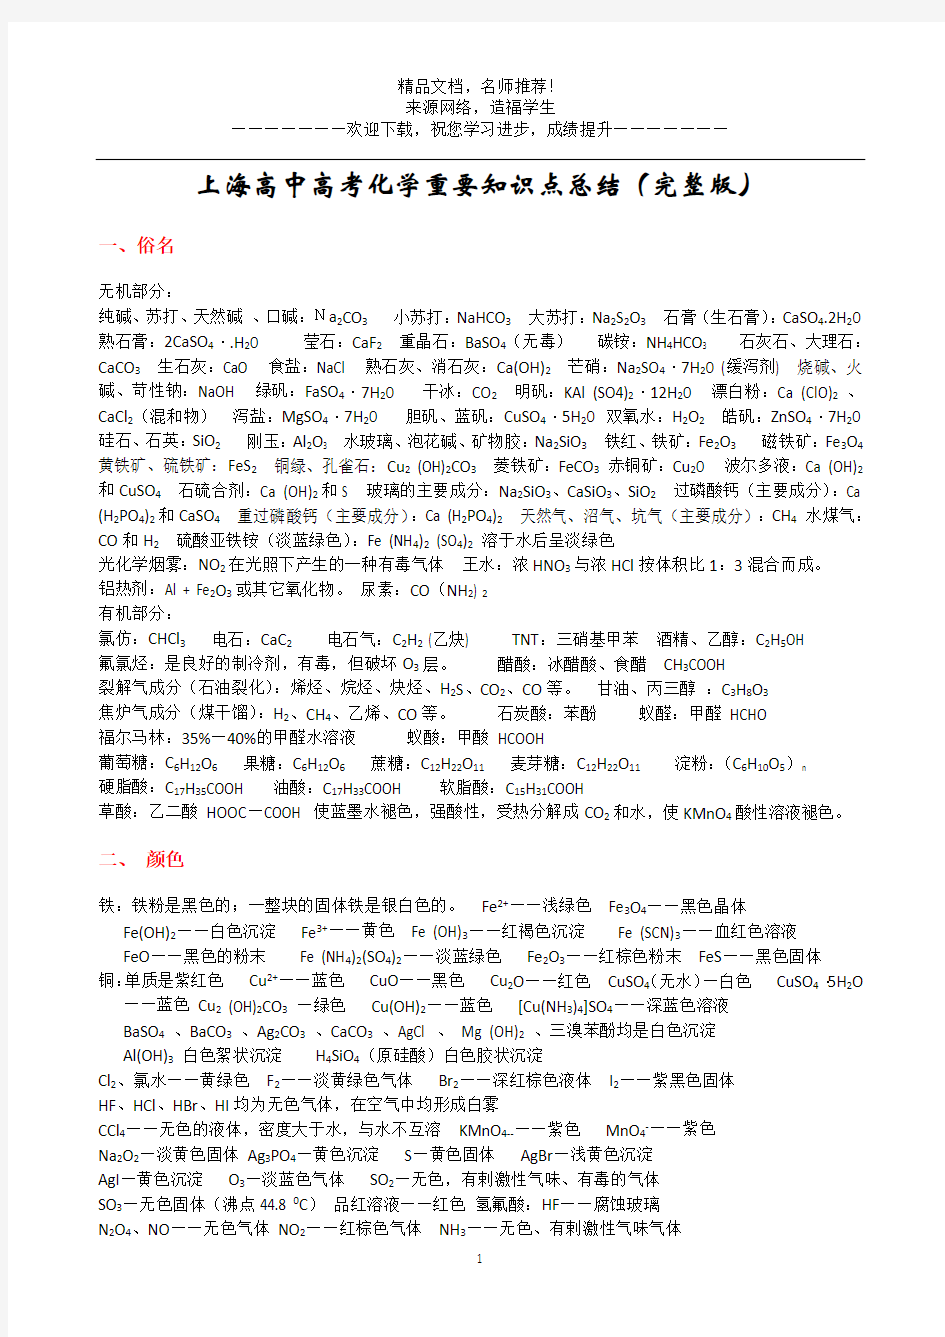 上海高中高考化学重要知识点总结(完整版)